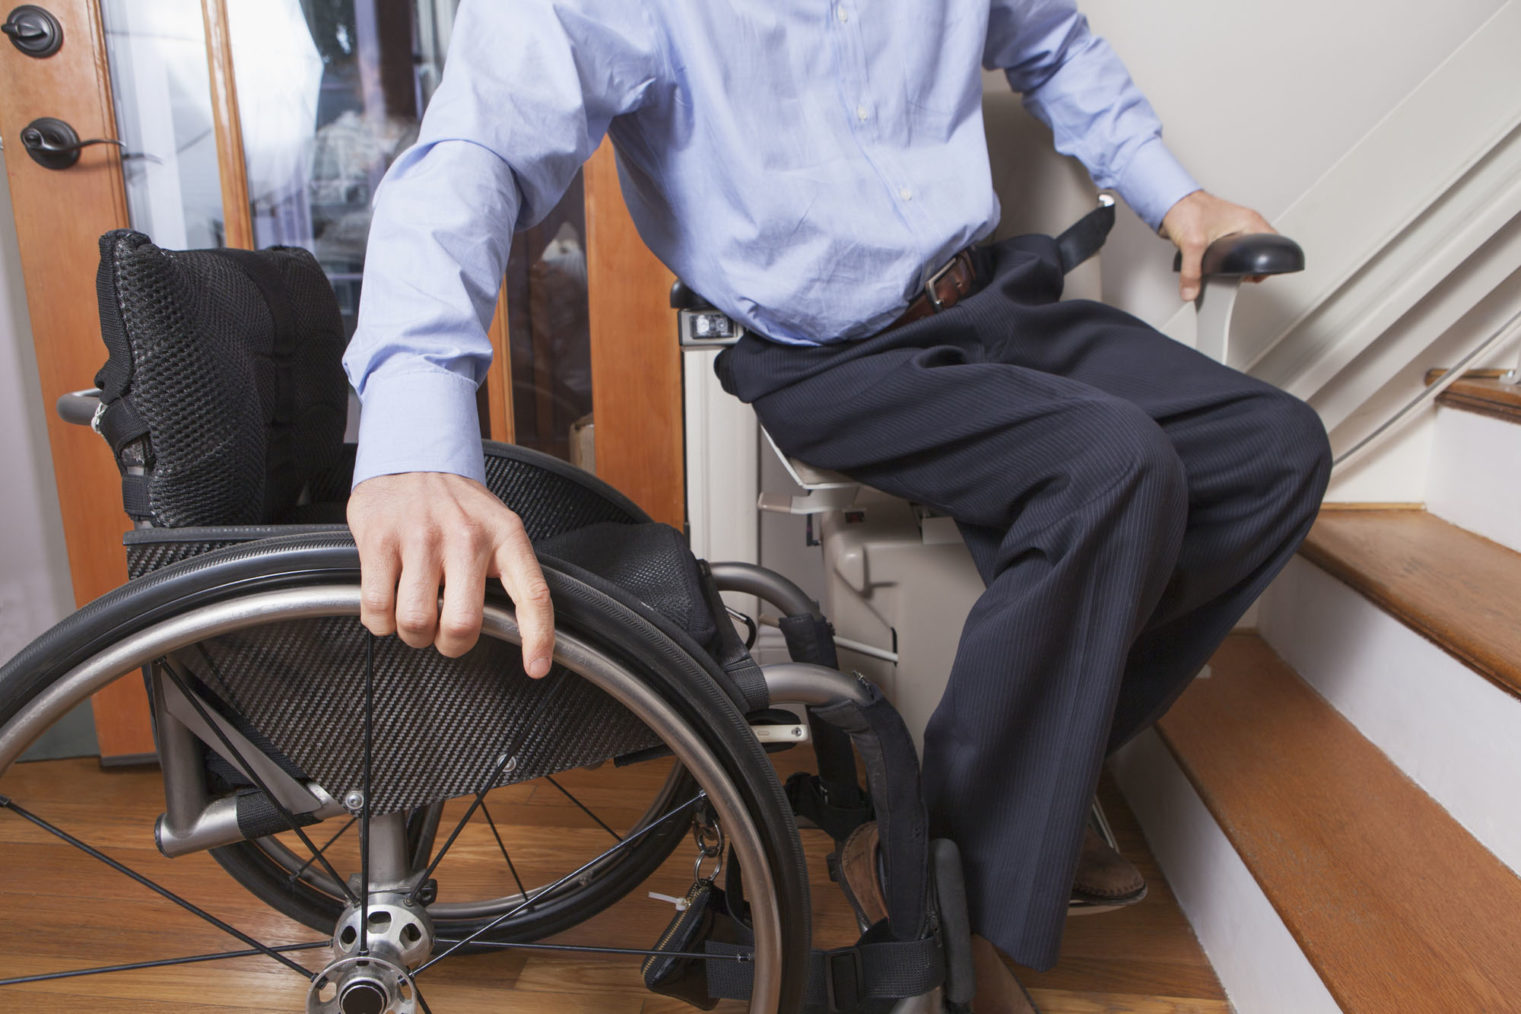 Detaljbilde av mann som beveger seg fra en rullestol over i en trappeheis.